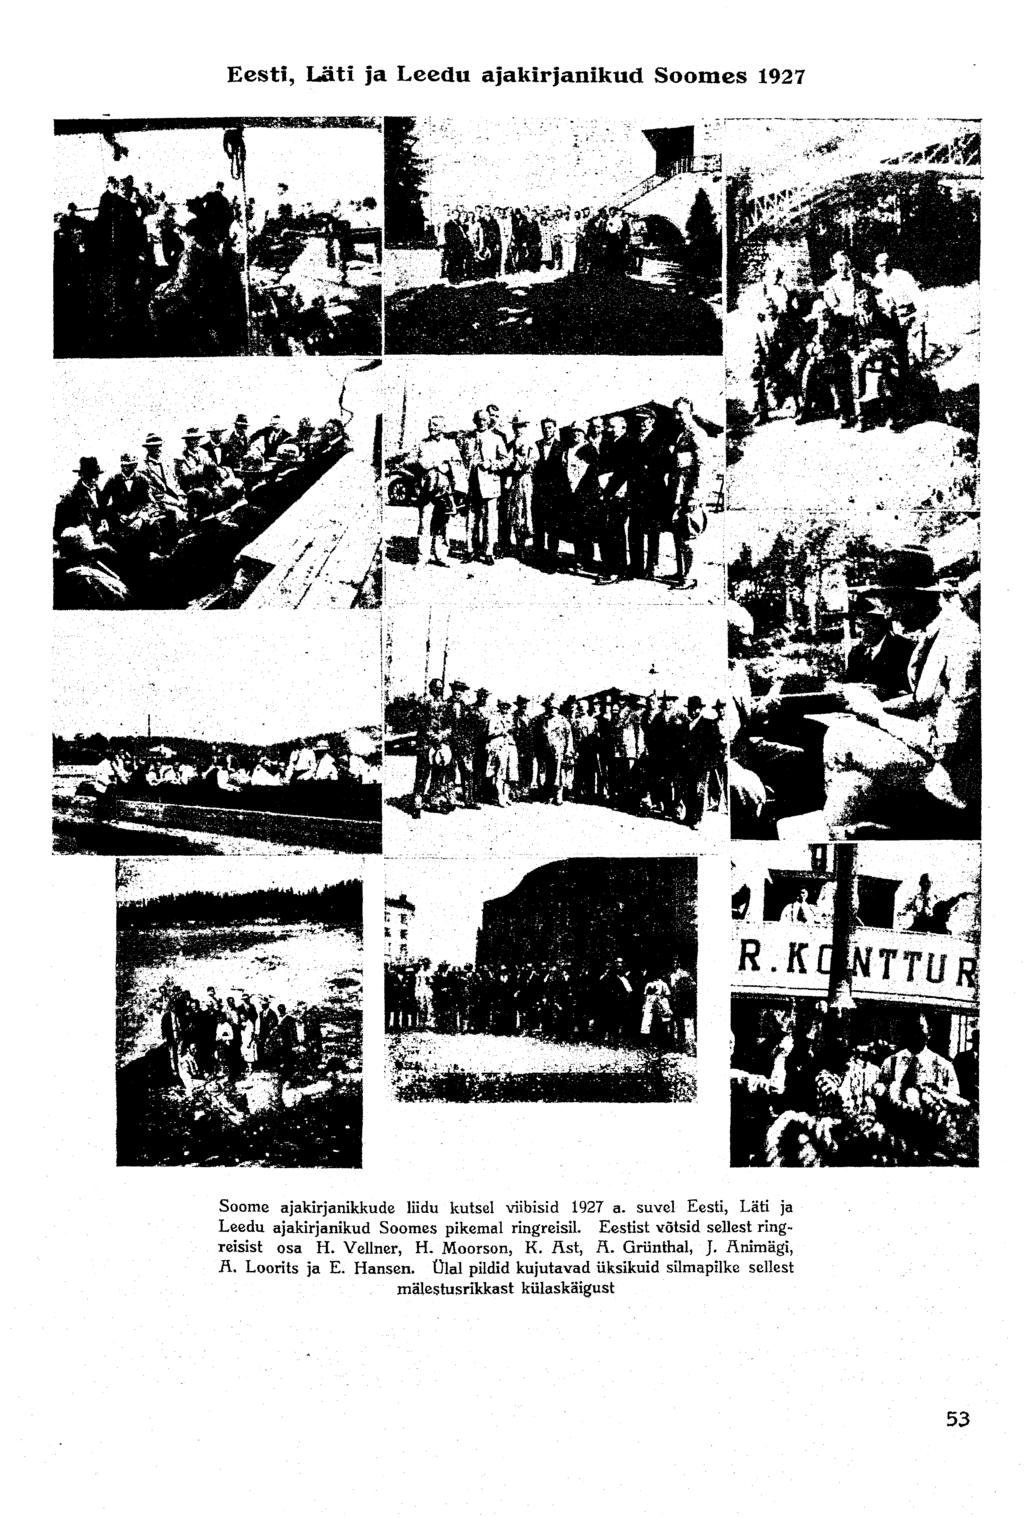 Eesti, Läti ja Leedu ajakirjanikud Soomes 1927 Soome ajakirjanikkude liidu kutsel viibisid 1927 a. suvel Eesti, Läti ja Leedu ajakirjanikud Soomes pikemal ringreisil.